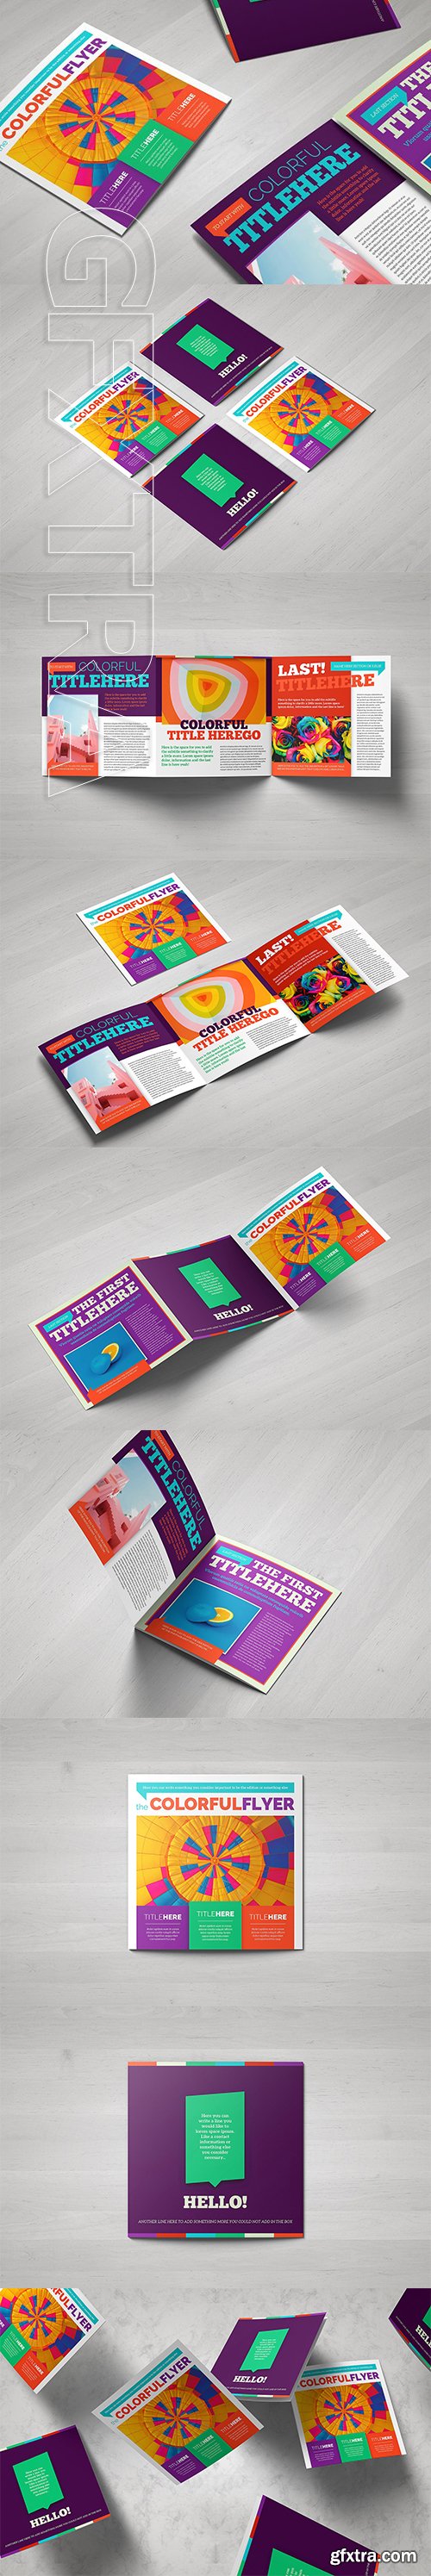 CreativeMarket - Colorful Square Brochure Template 2794094